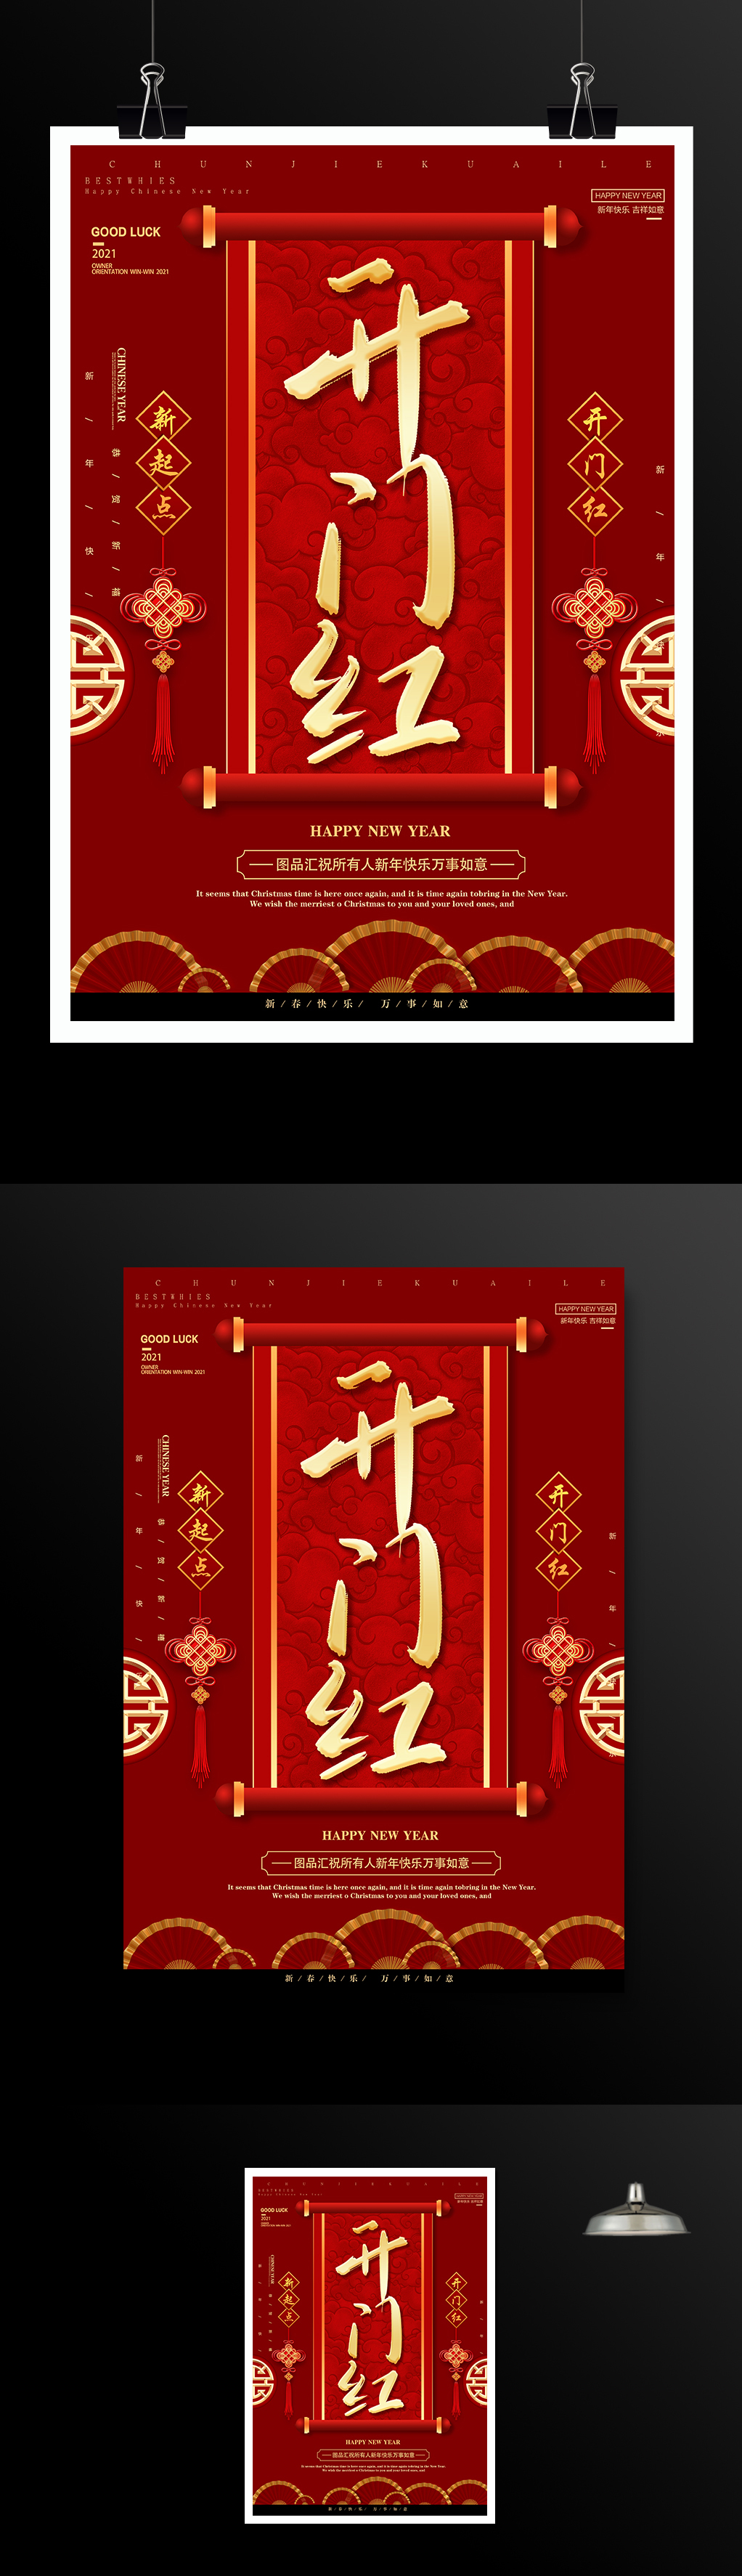 红色大气公司开门红春节海报模板